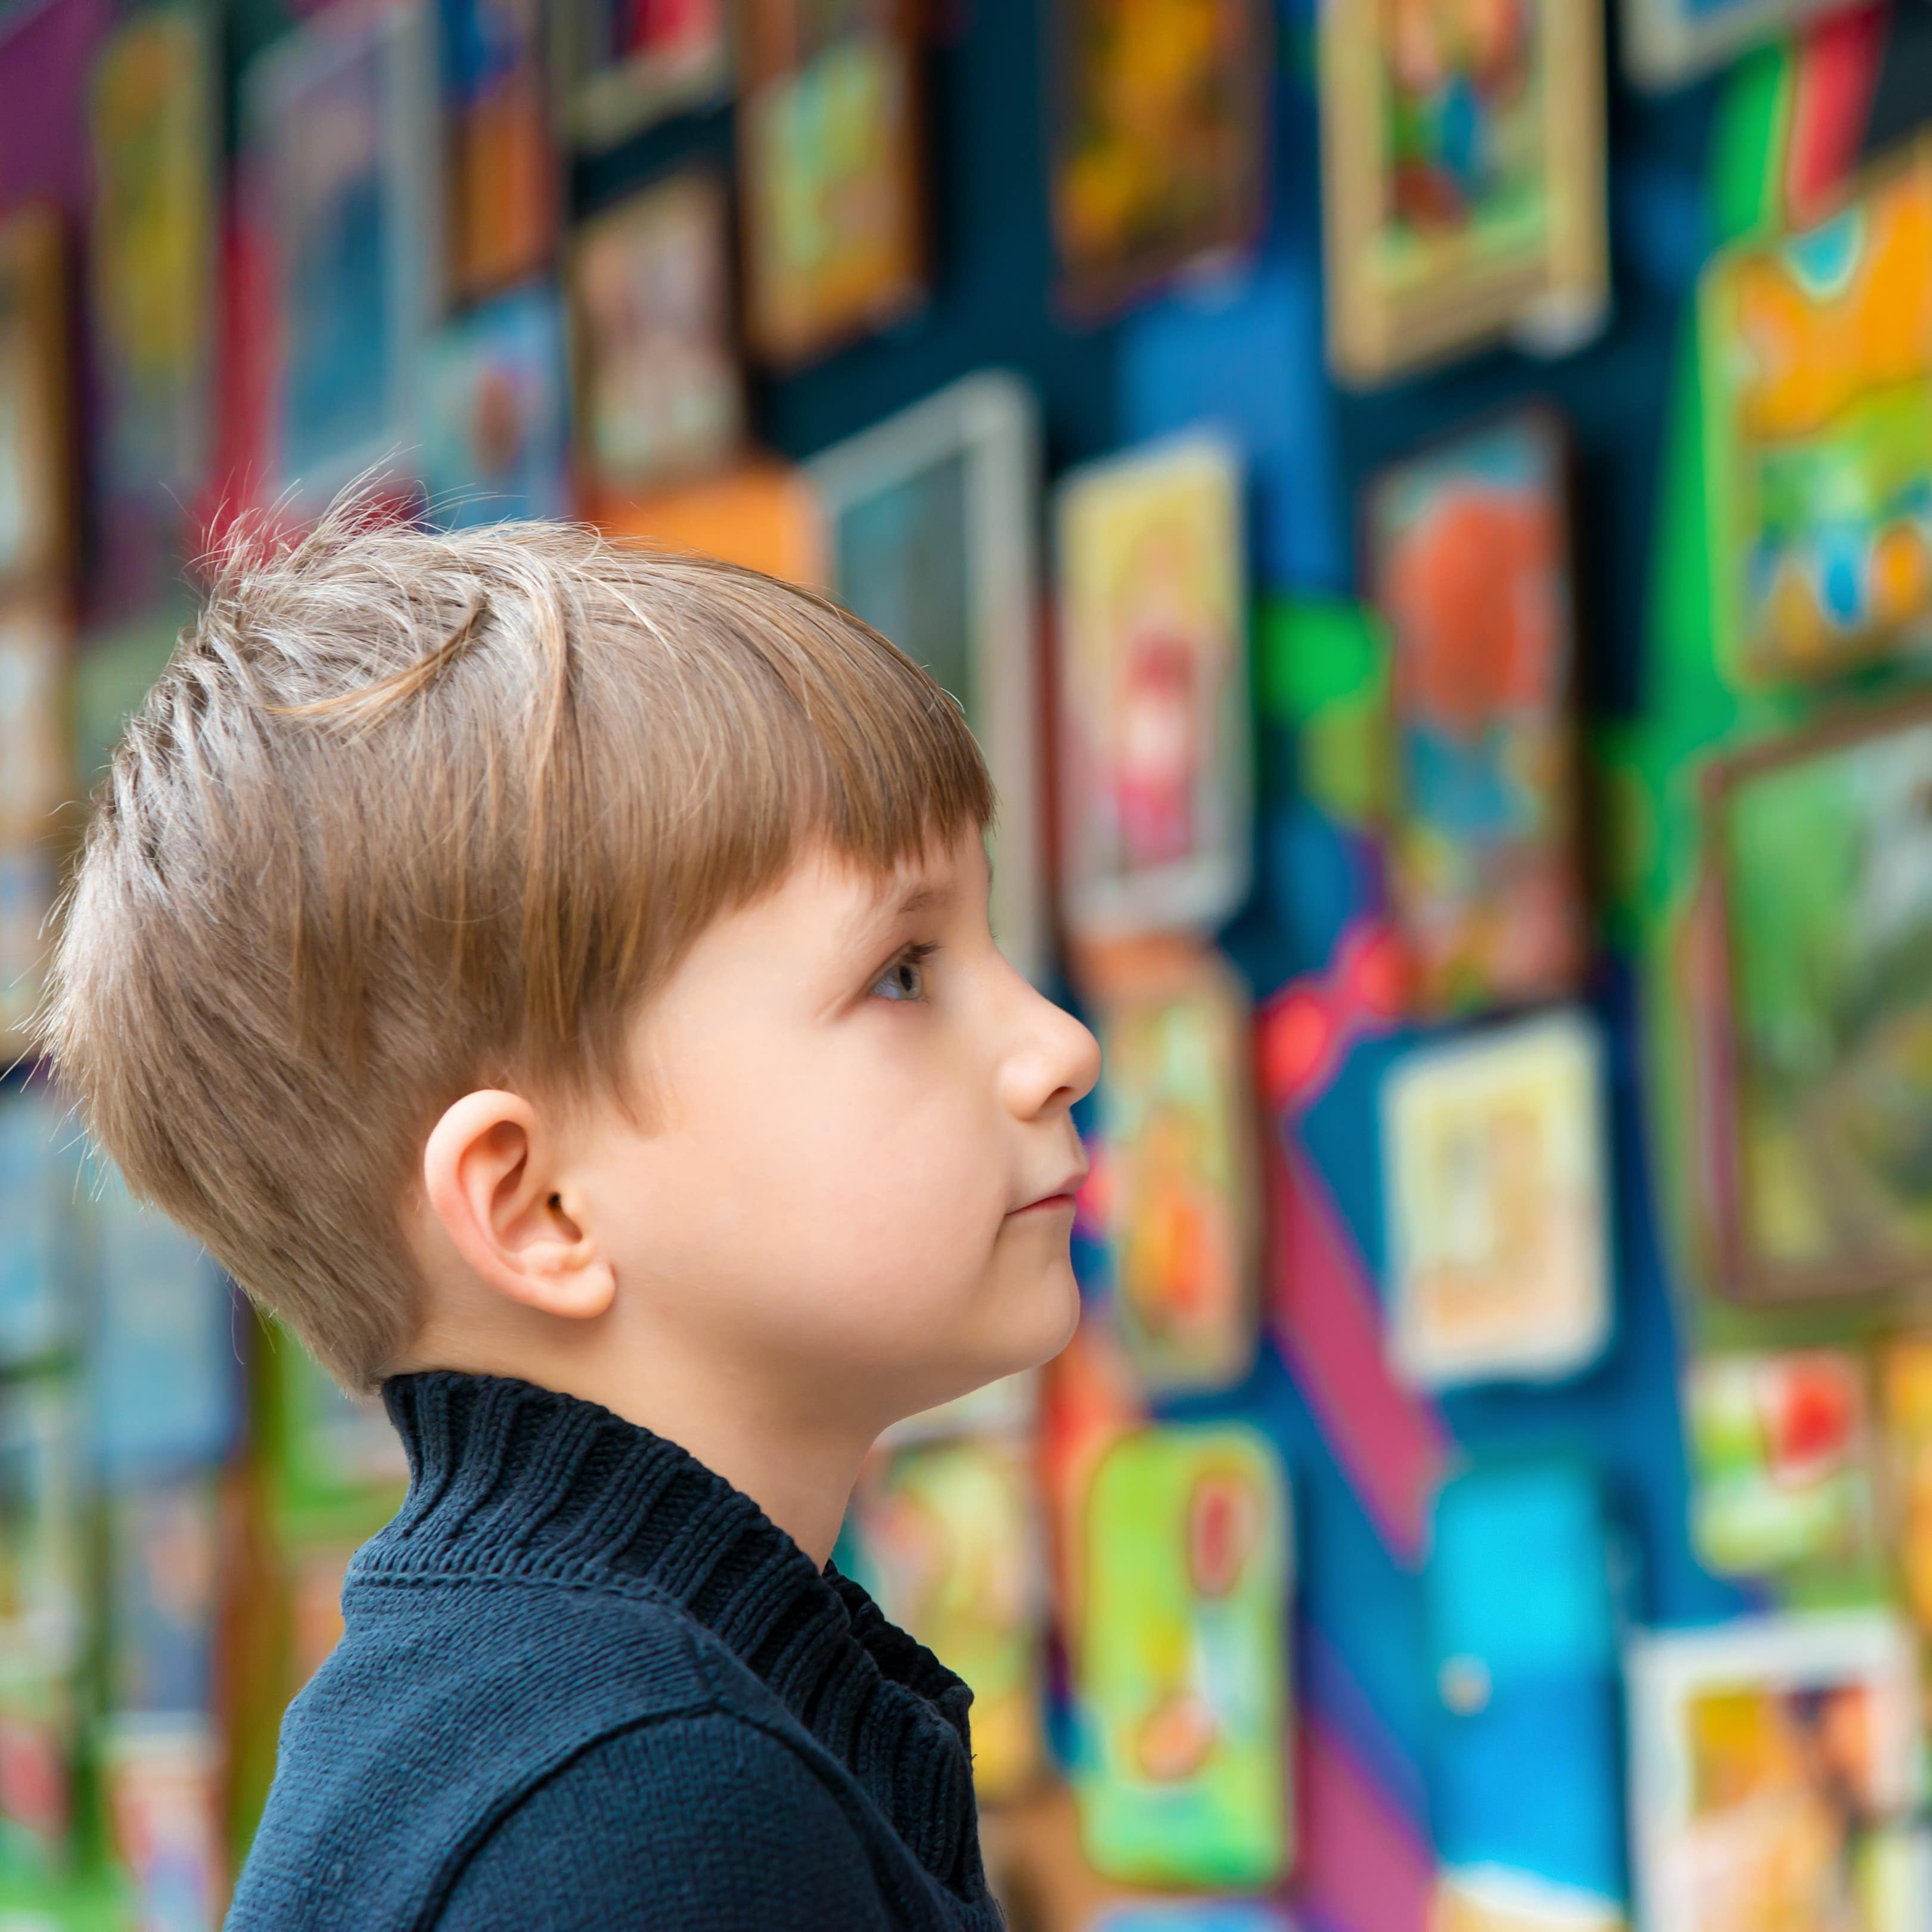 Ein blonder Junge betrachtet eine bunte Bilderwand.